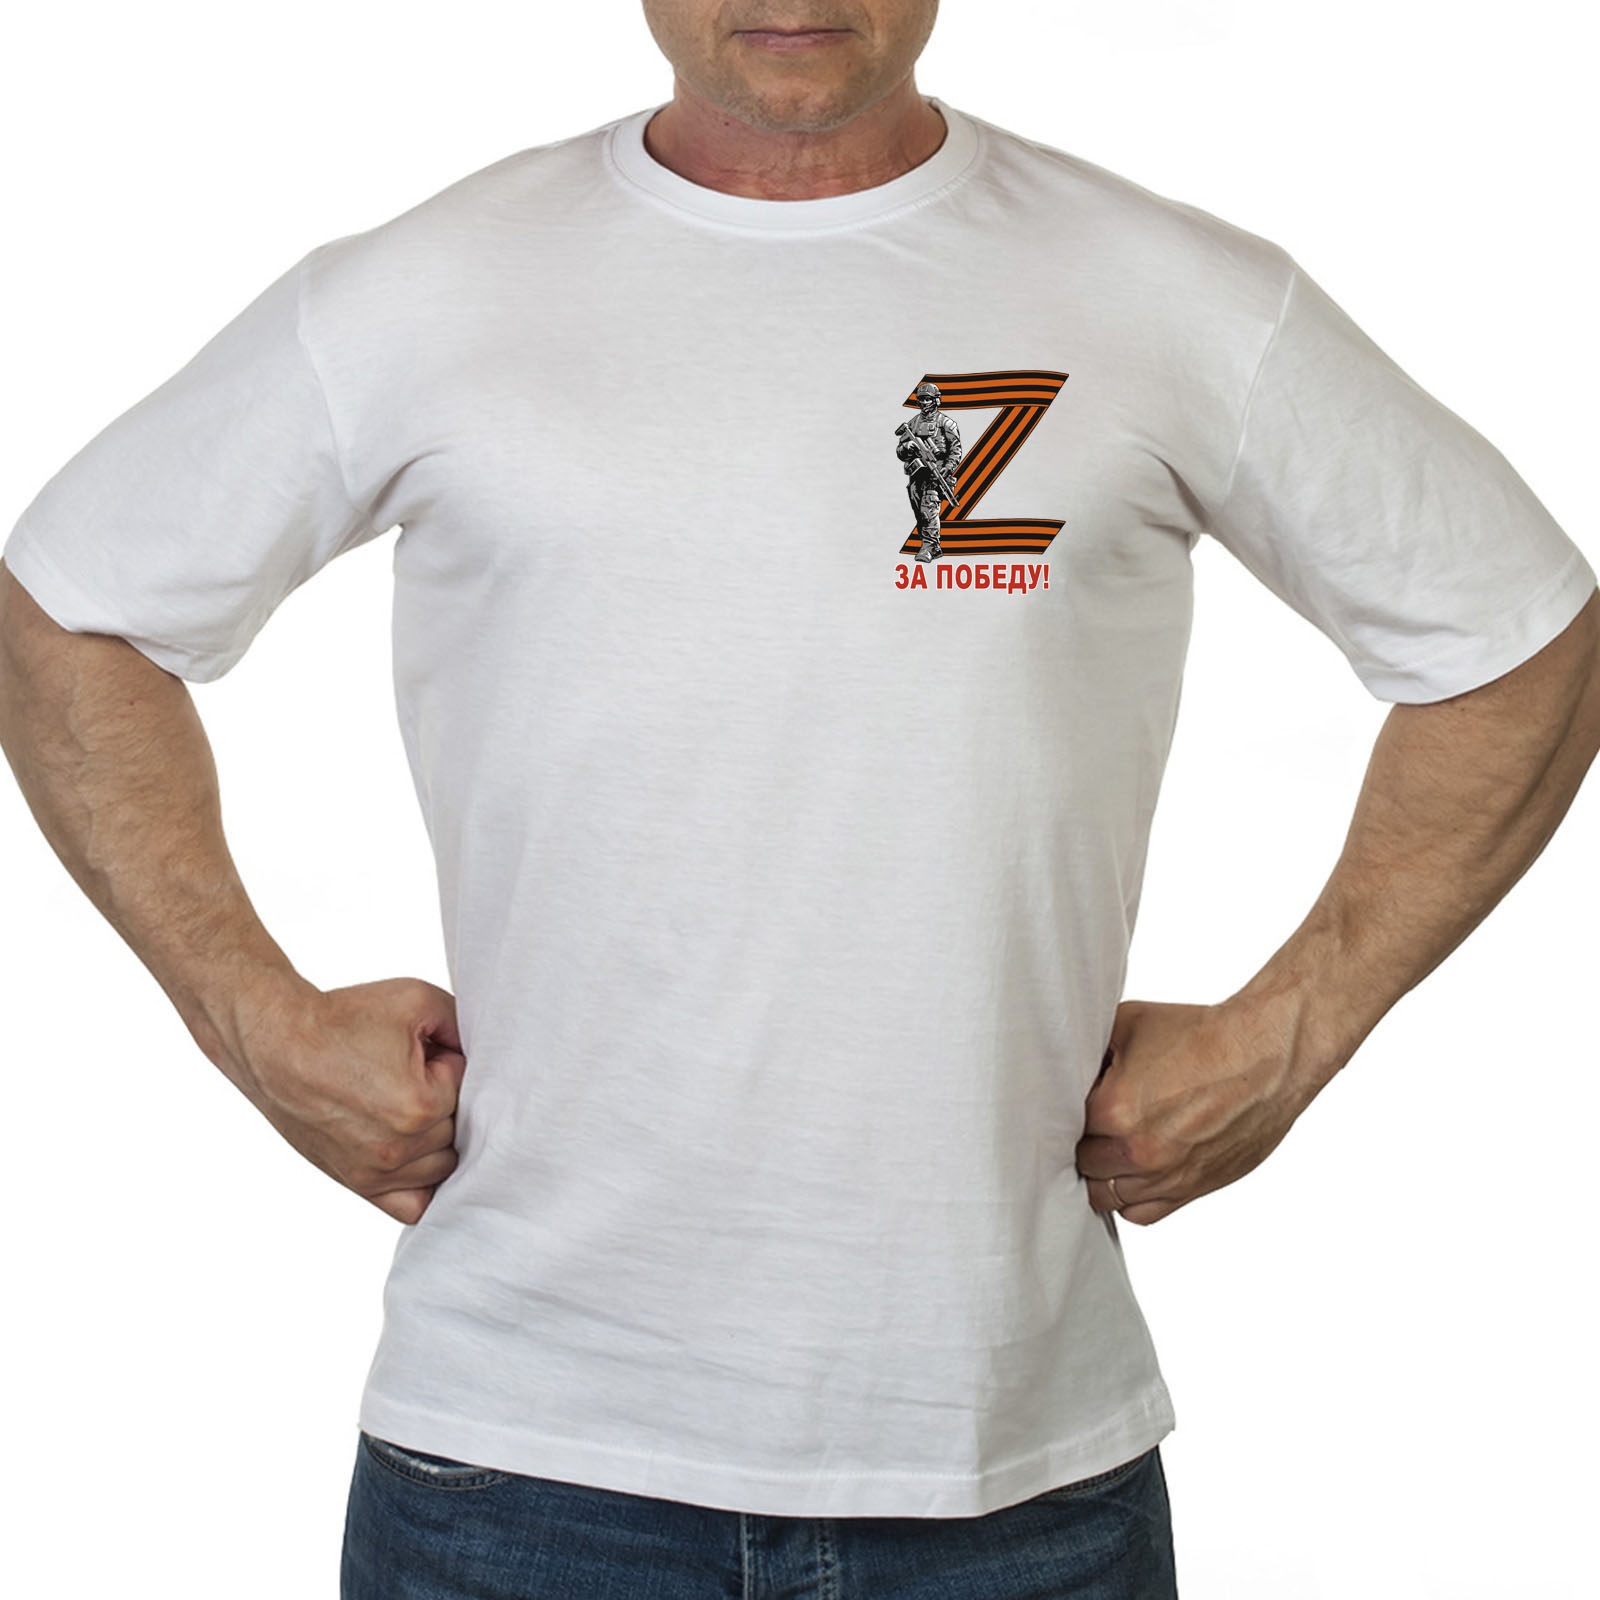 Купить футболку под знаком Z